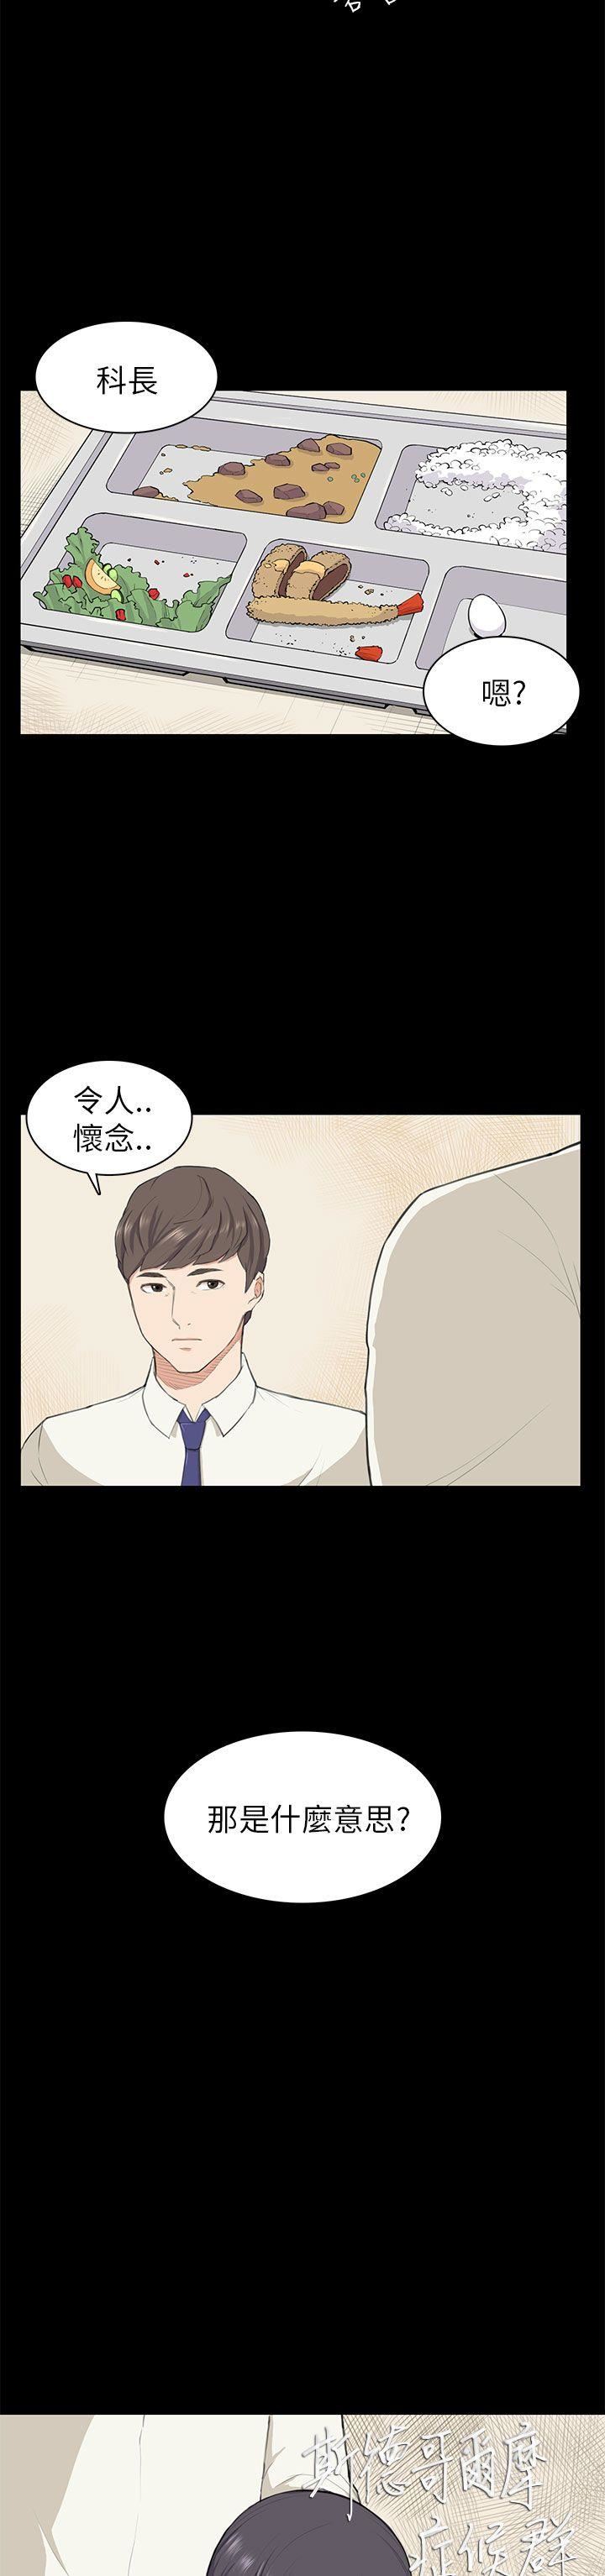 韩国污漫画 斯德哥爾摩癥候群 第10话 2